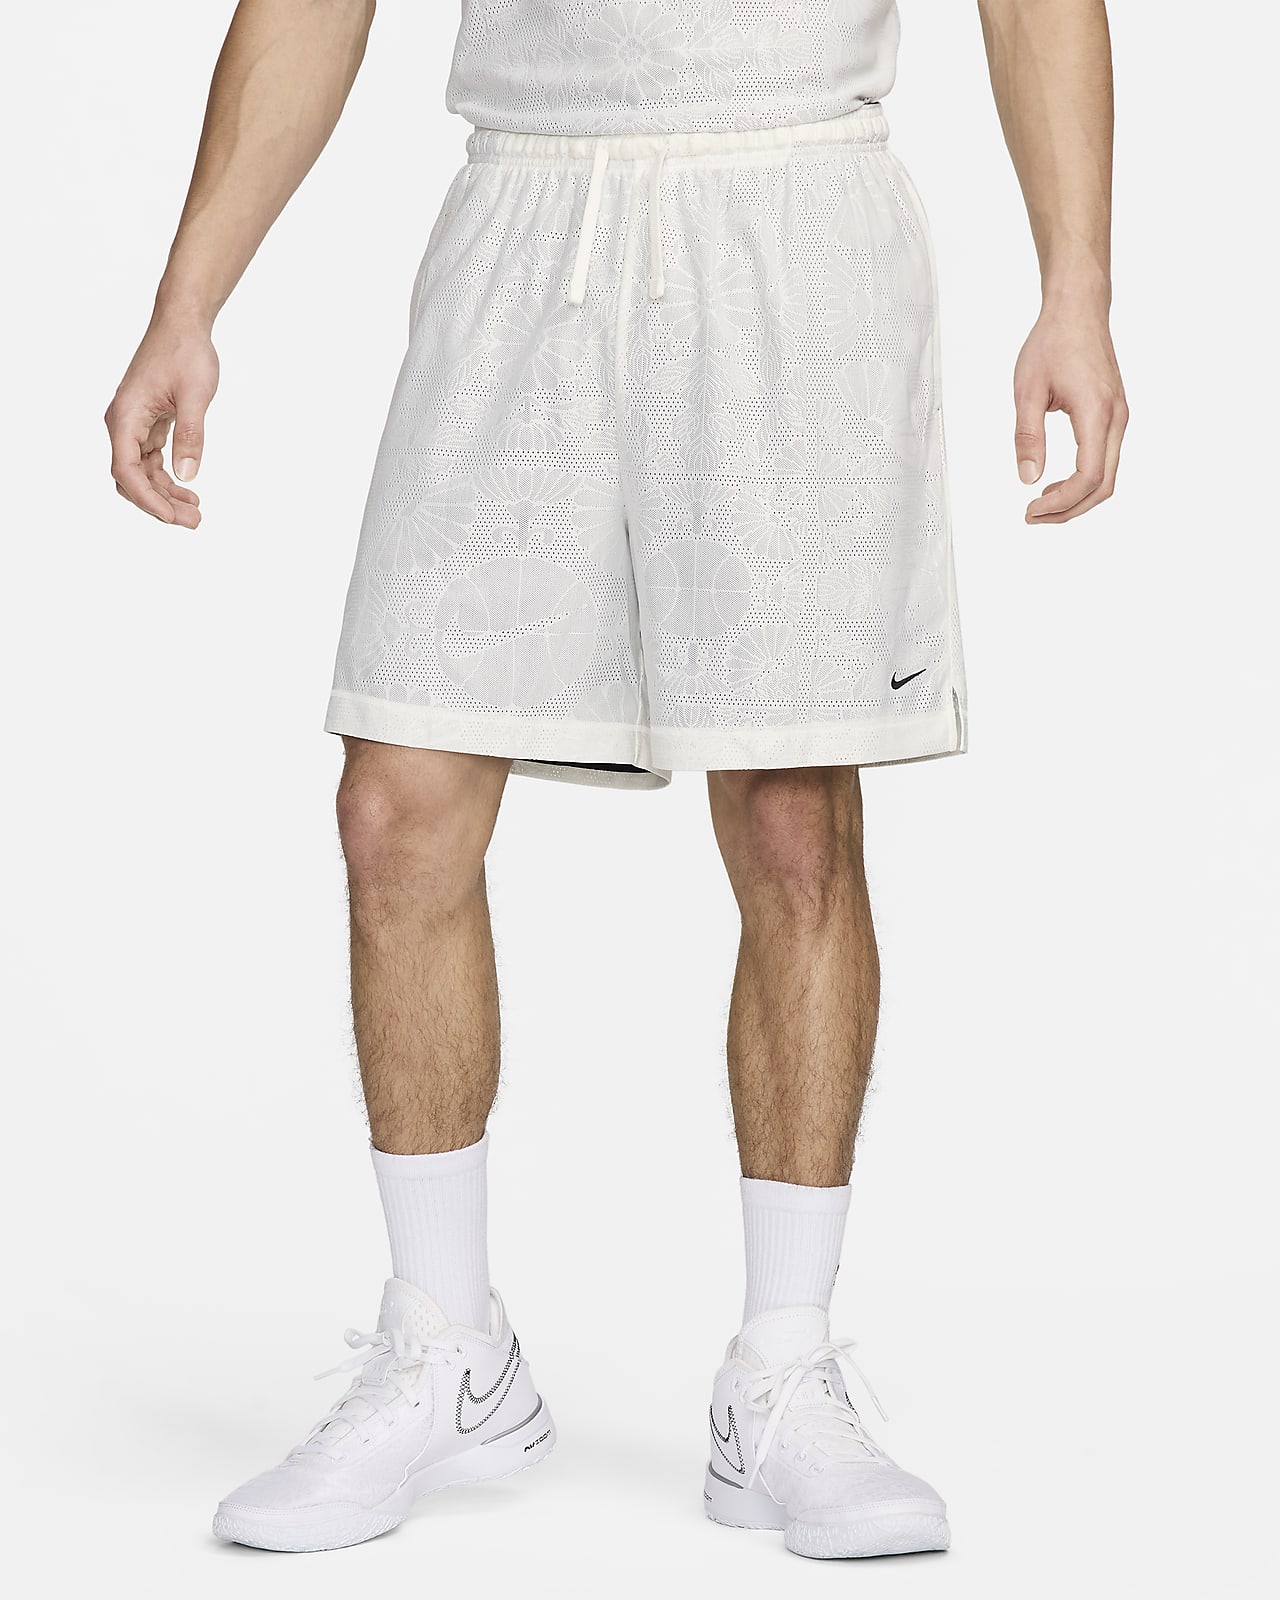 Shorts de básquetbol Dri-FIT reversibles de 15 cm para hombre Nike Standard Issue